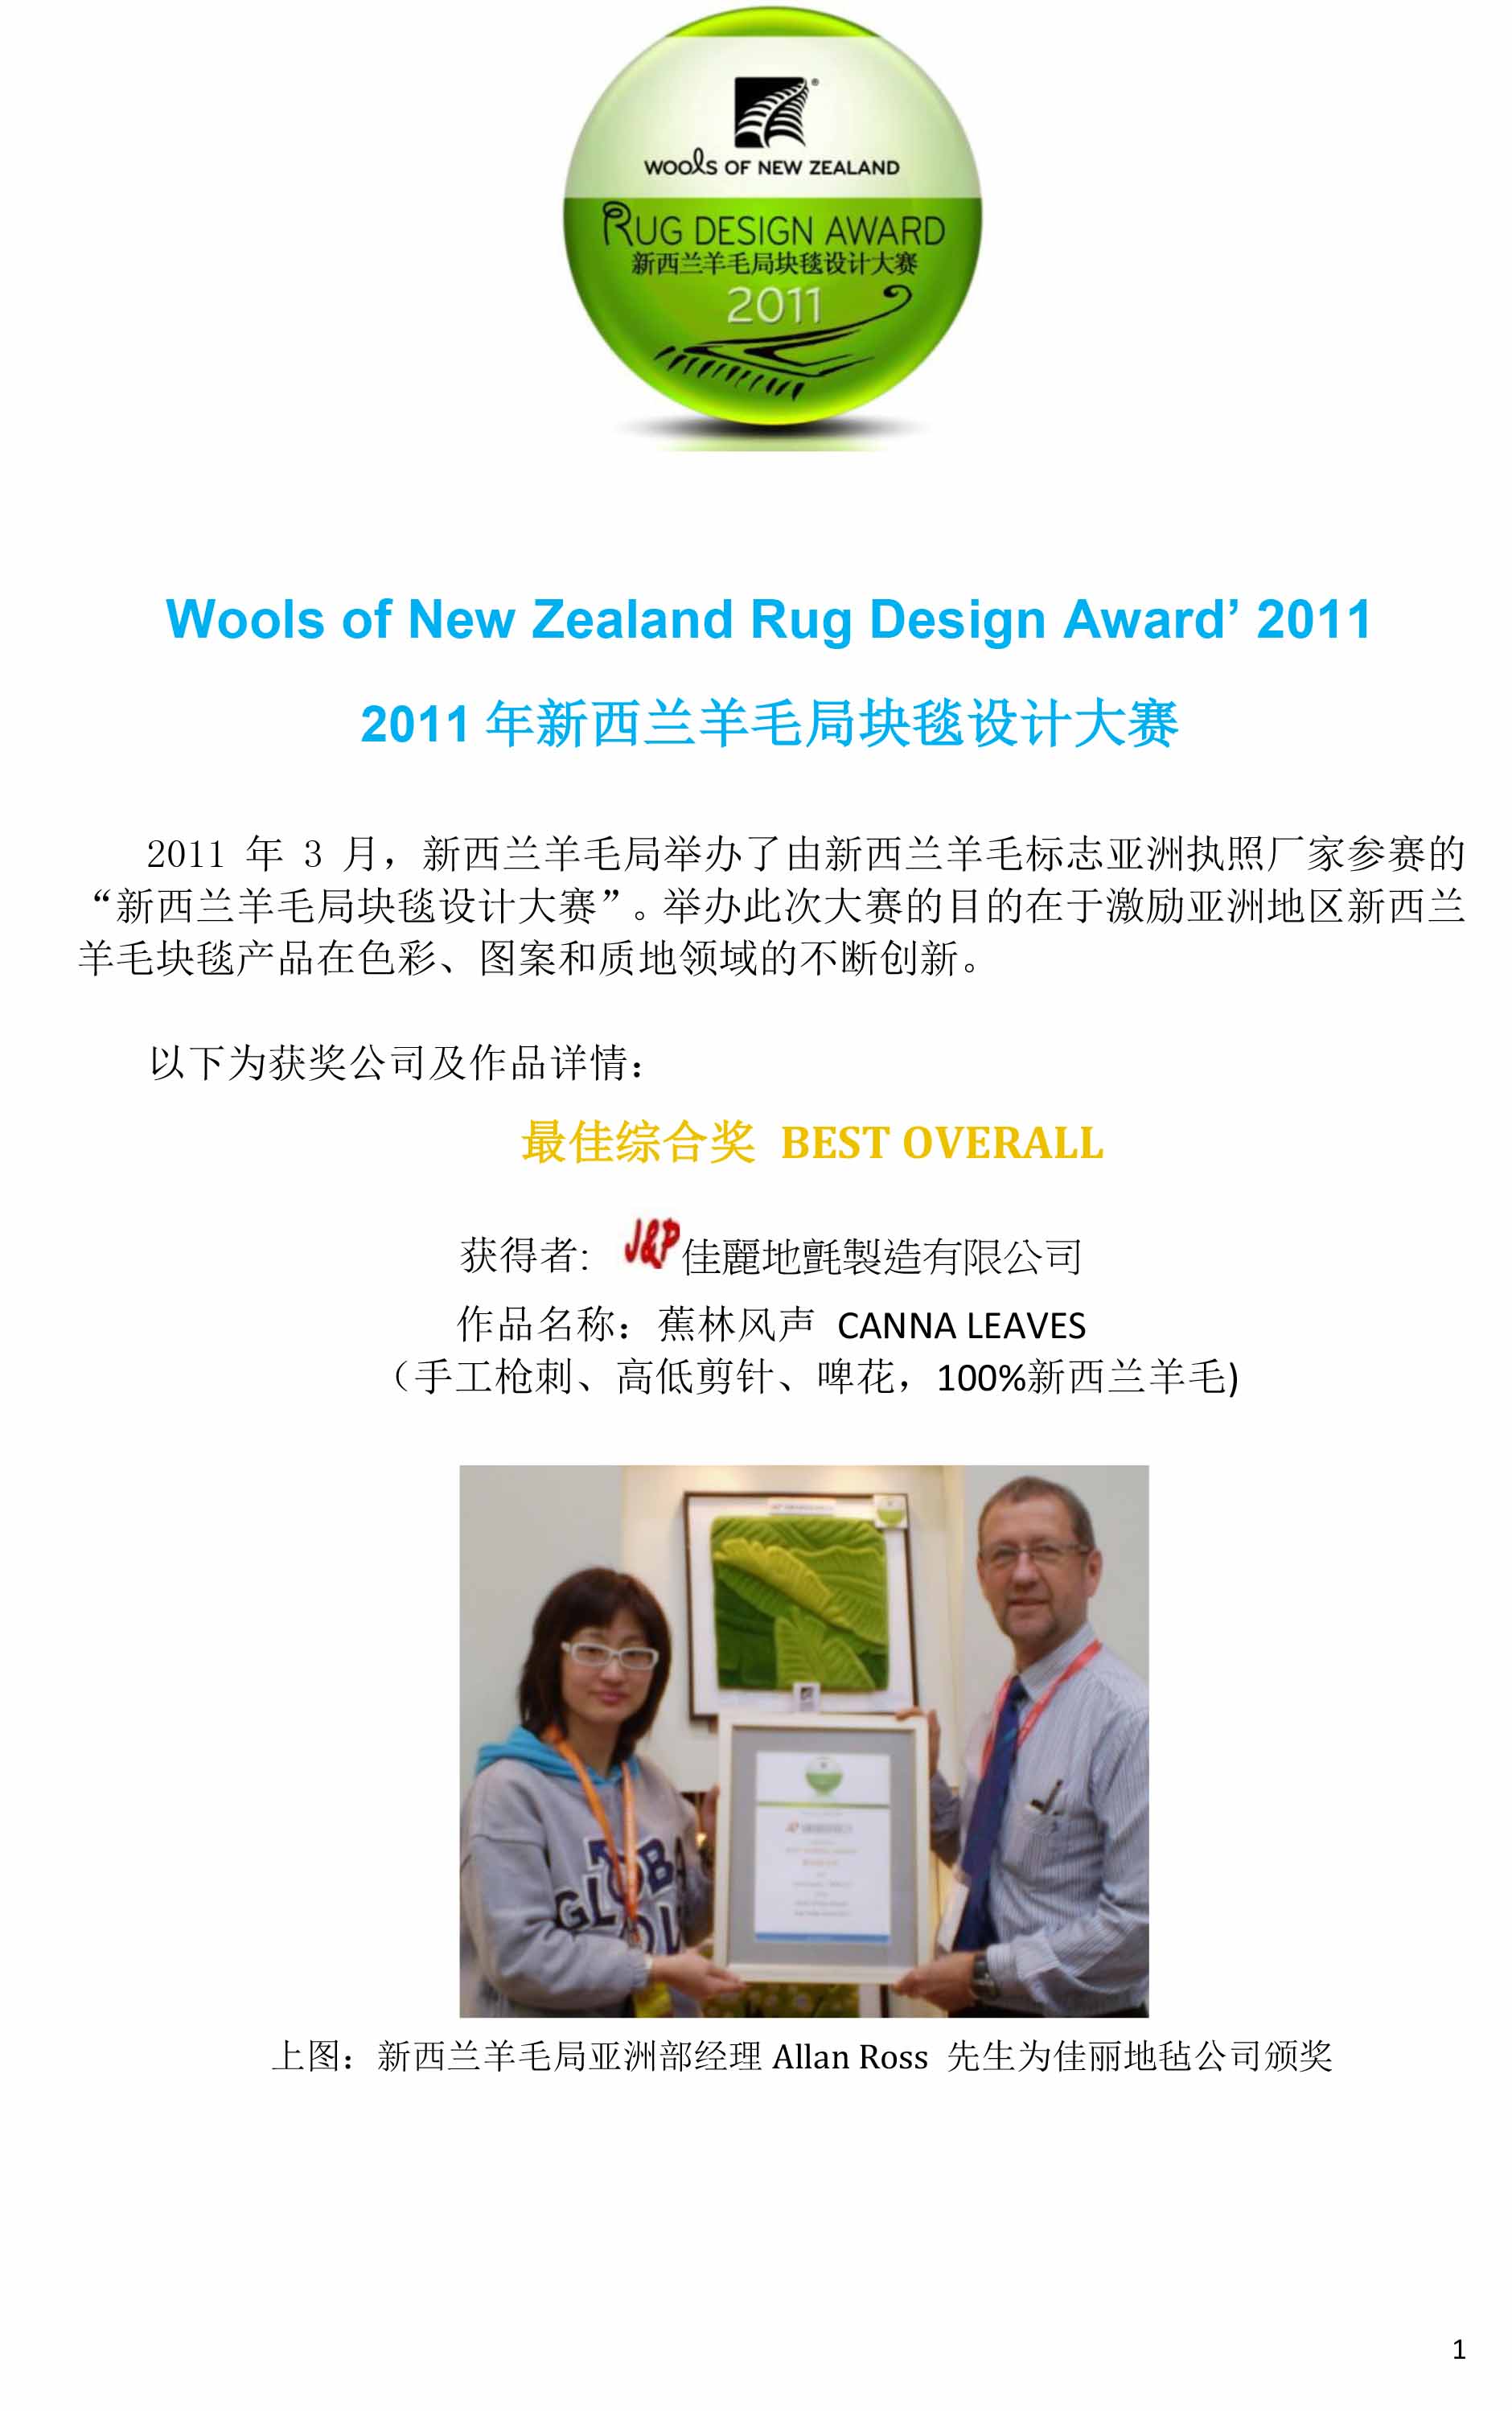 新西兰羊毛局通讯-2011年新西兰羊毛局块毯设计大赛-1.jpg